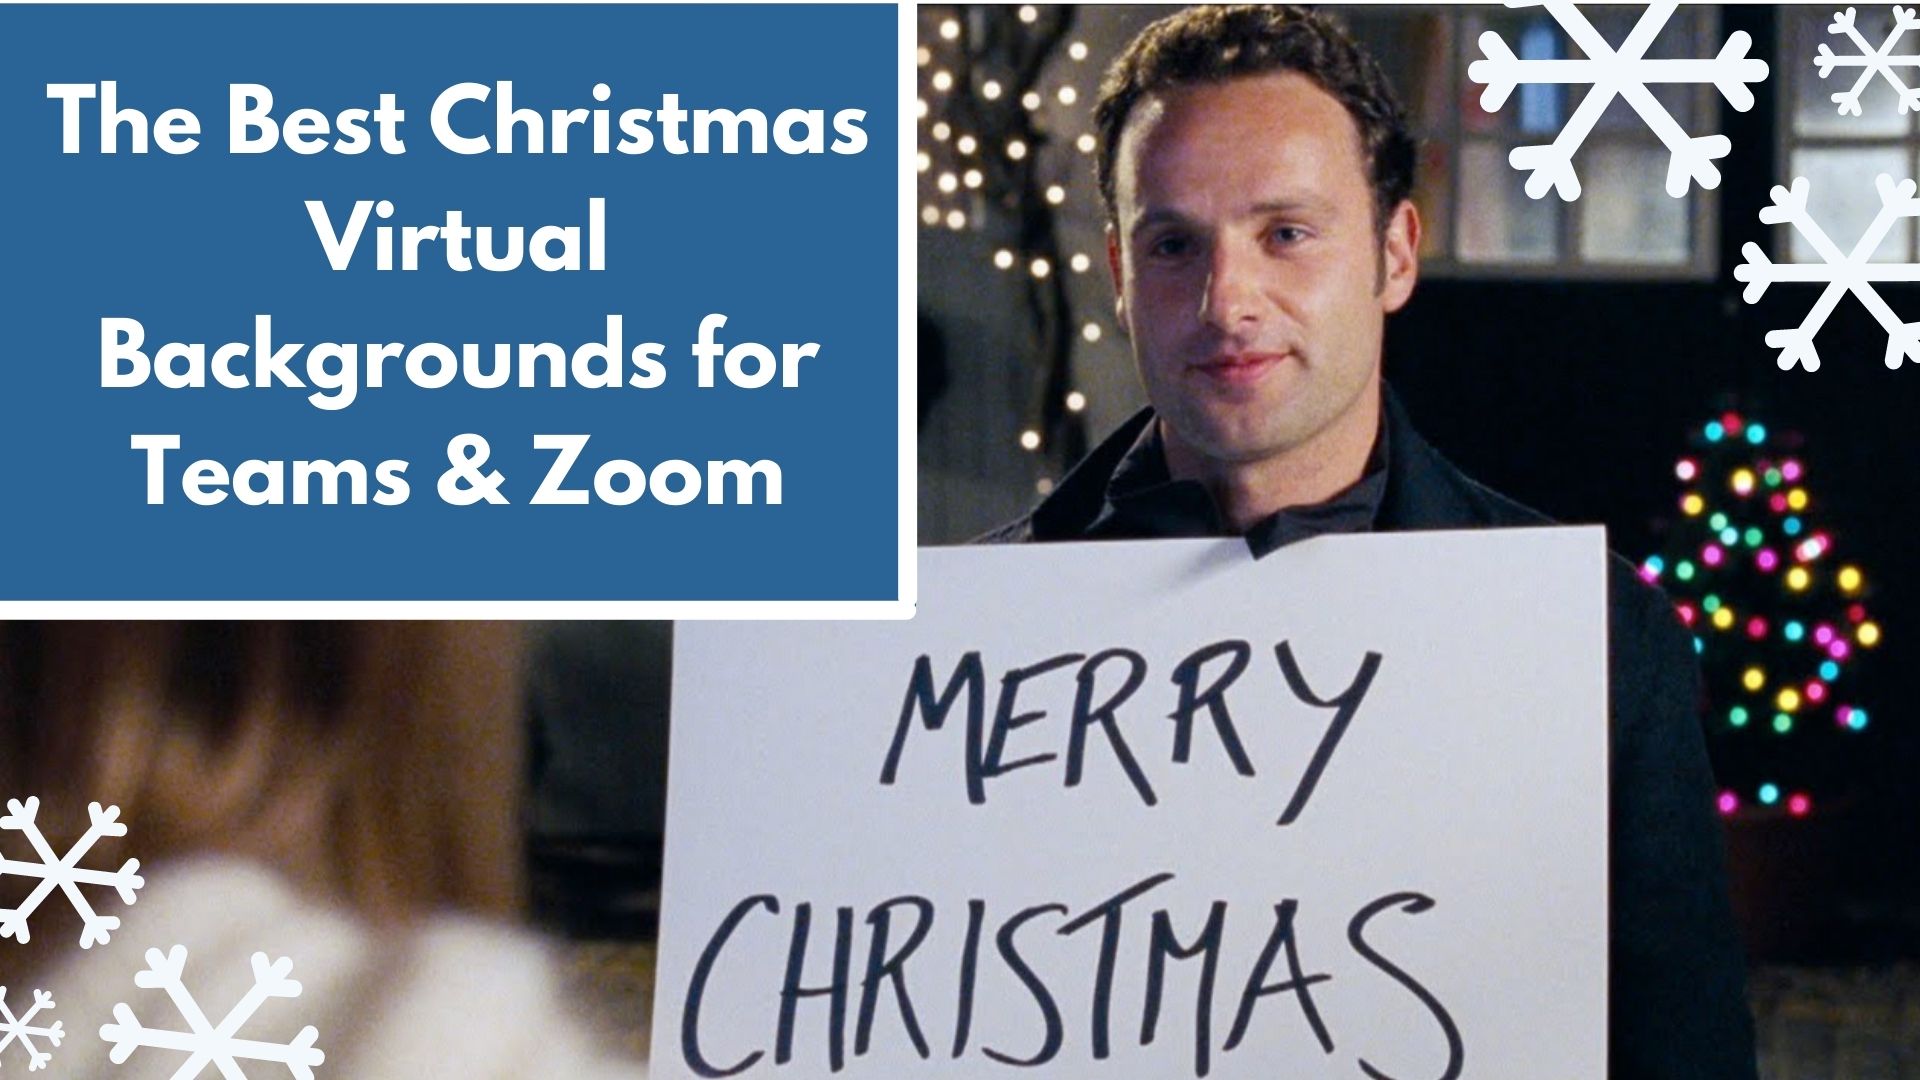 Giáng sinh đang đến, liệu bạn đã sẵn sàng cho Zoom calls? Tận hưởng mùa lễ hội với những bộ Backgrounds chất lượng cao của chúng tôi! Hình ảnh phong cảnh lộng lẫy và hài hước sẽ làm cho dịp lễ hội của bạn trở nên đáng nhớ hơn bao giờ hết!